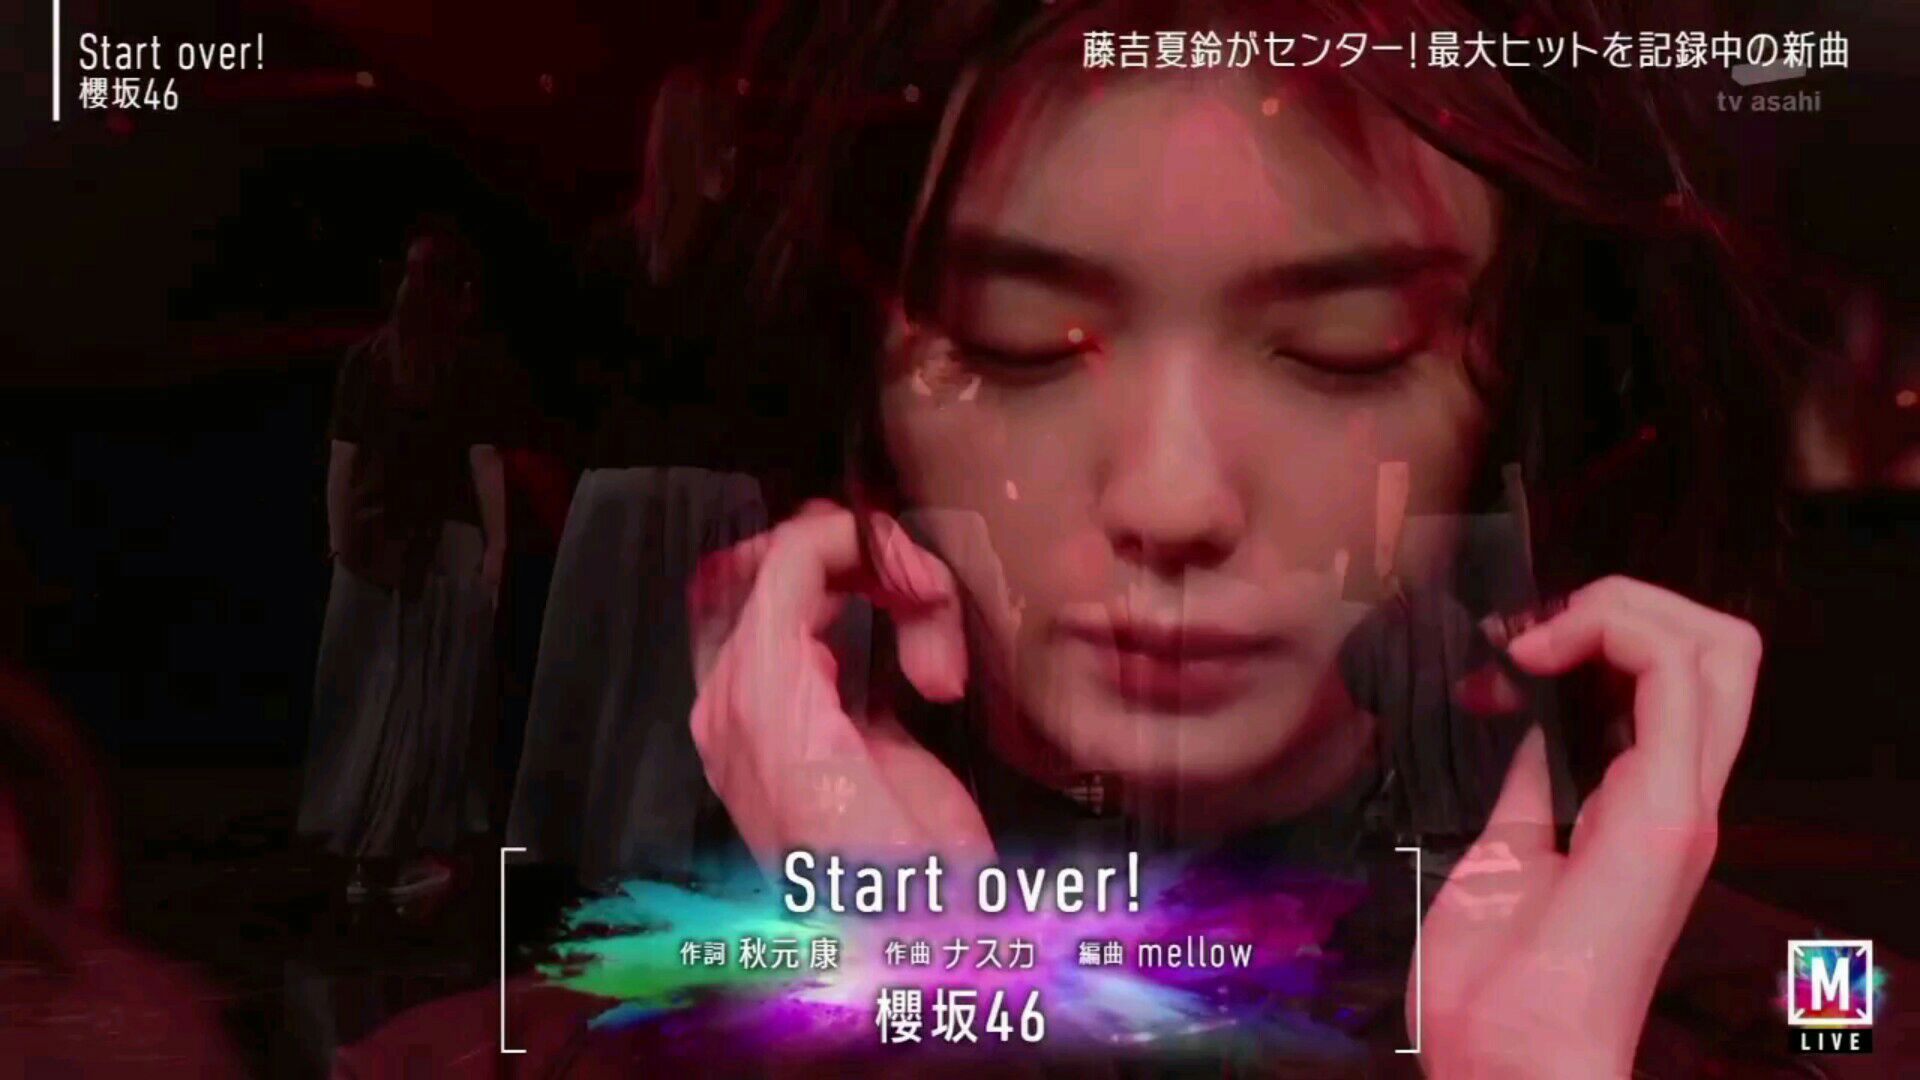 Start Over! Lyrics In Romanized - Sakurazaka46